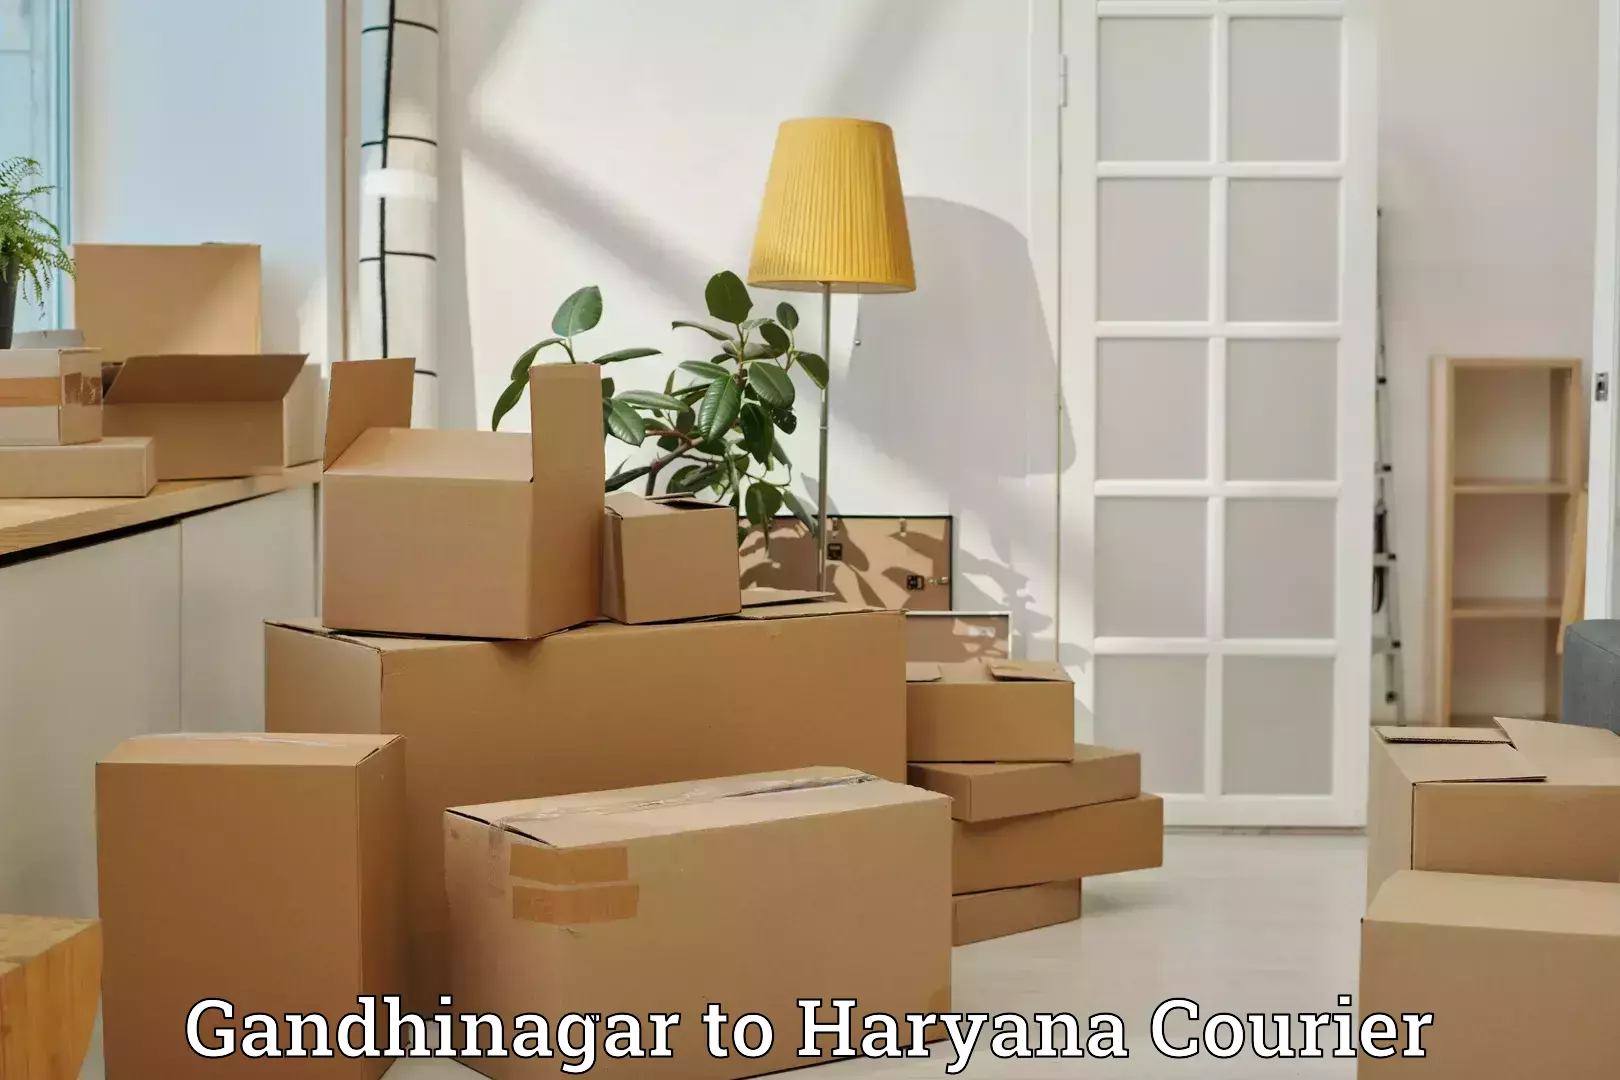 Efficient luggage delivery in Gandhinagar to Assandh